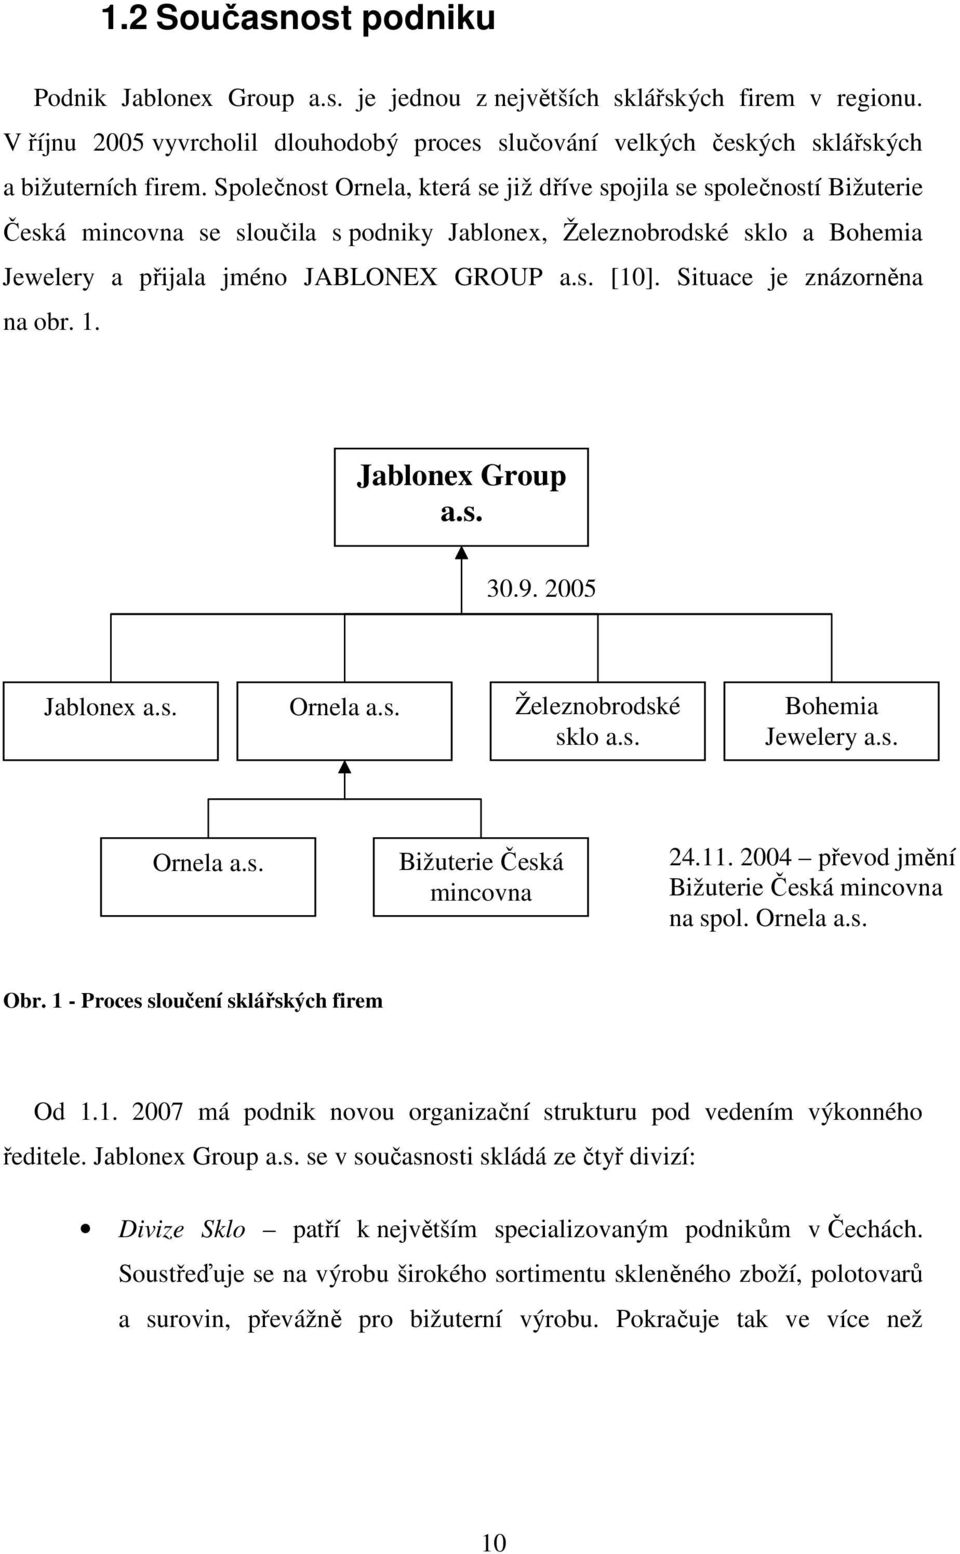 Situace je znázorněna na obr. 1. Jablonex Group a.s. 30.9. 2005 Jablonex a.s. Ornela a.s. Železnobrodské sklo a.s. Bohemia Jewelery a.s. Ornela a.s. Bižuterie Česká mincovna 24.11.